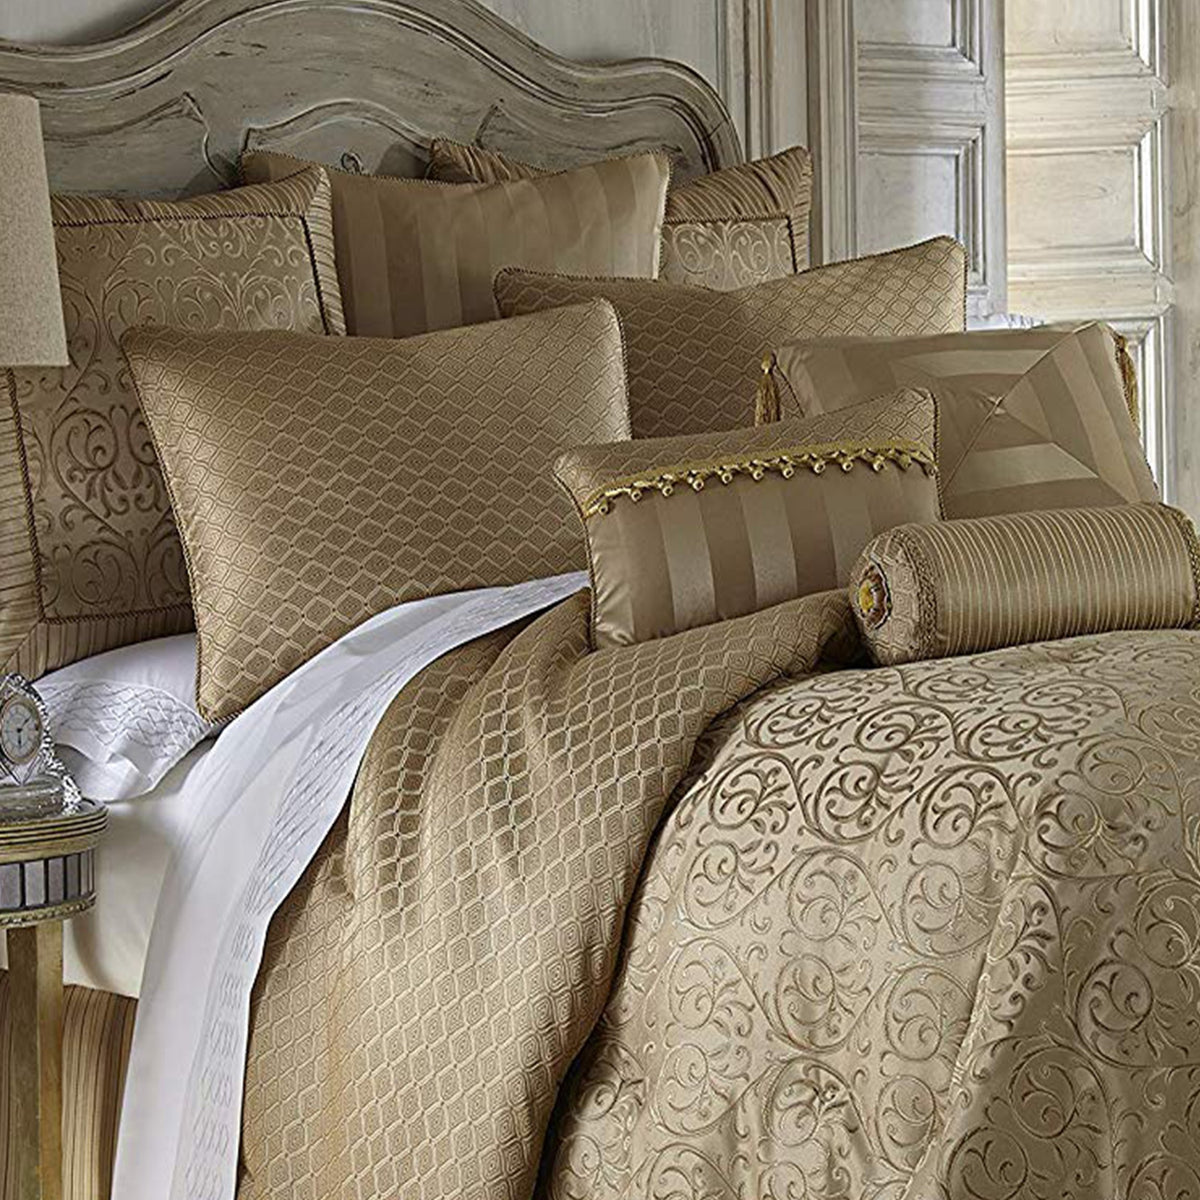 Grey And Gold Comforter Set : Sardinia Gold 4-Piece Comforter Set